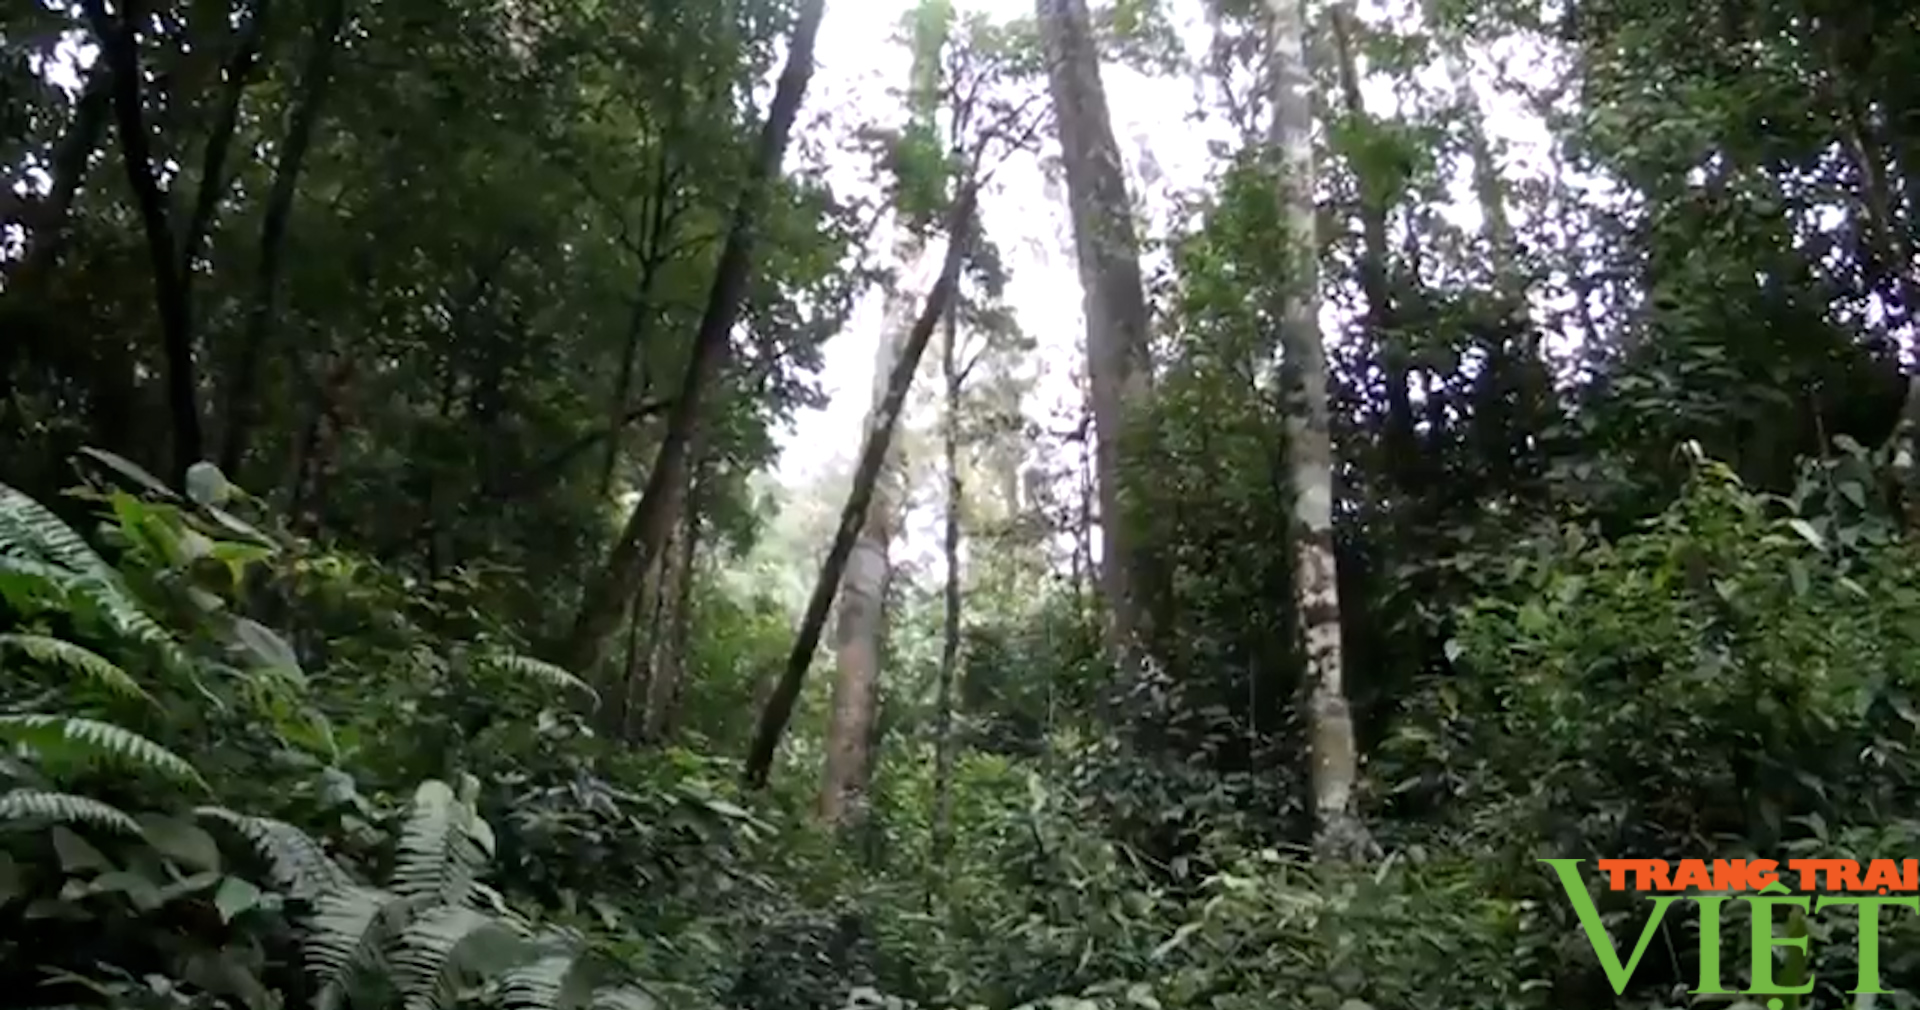 Quản lý, bảo vệ tốt diện tích rừng đặc dụng Tà Xùa - Ảnh 2.